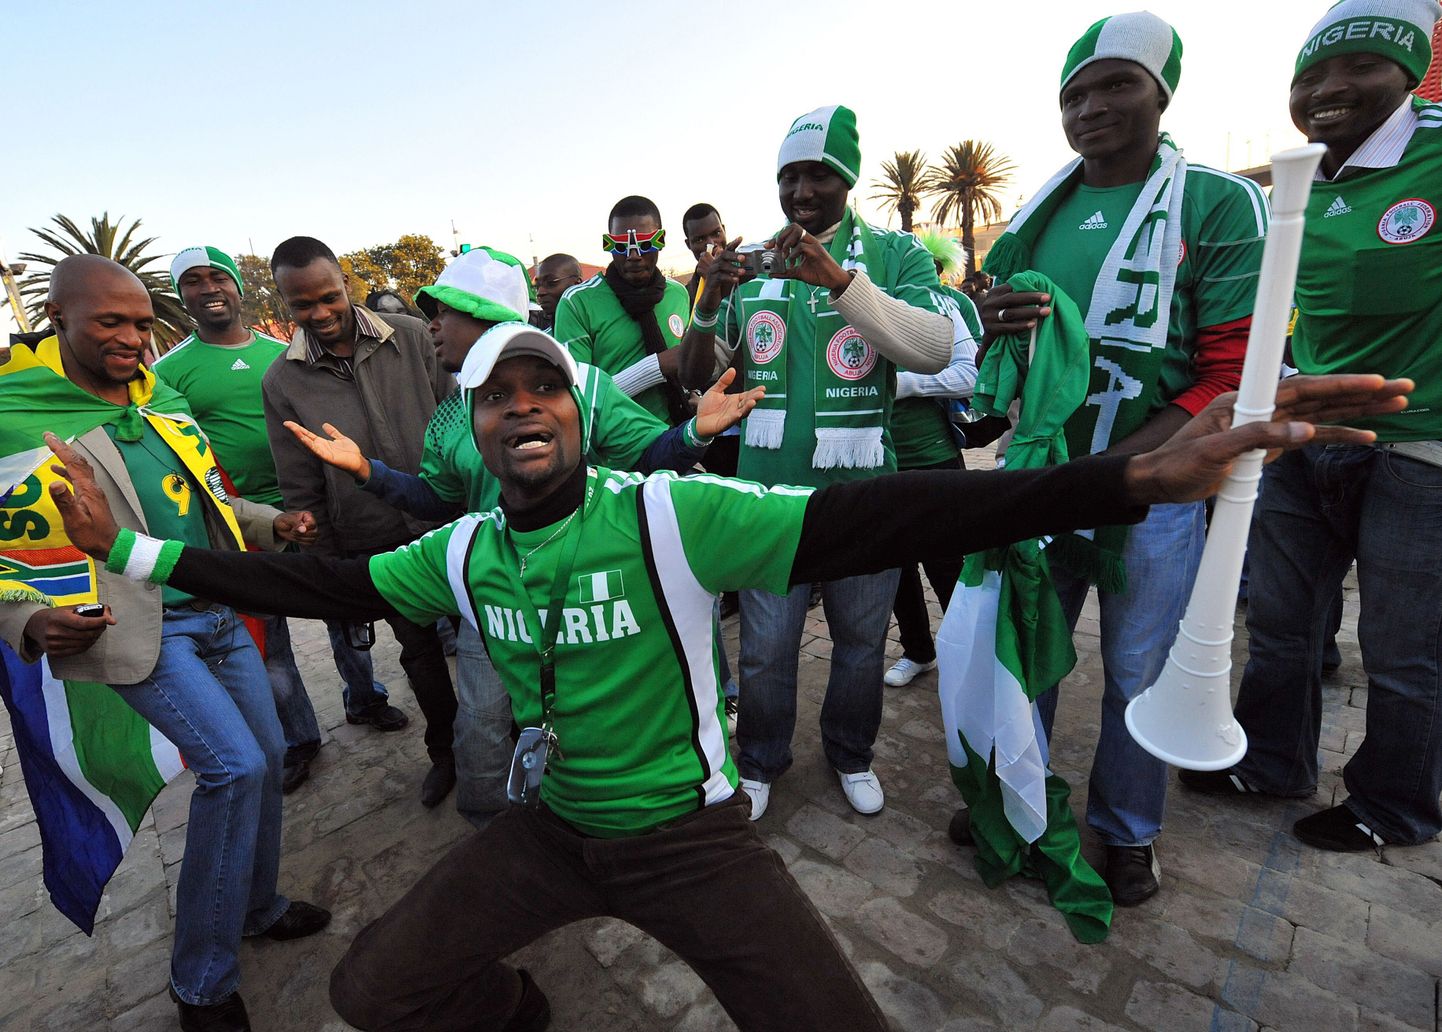 Nigeeria jalgpallikoondise poolehoidjad.